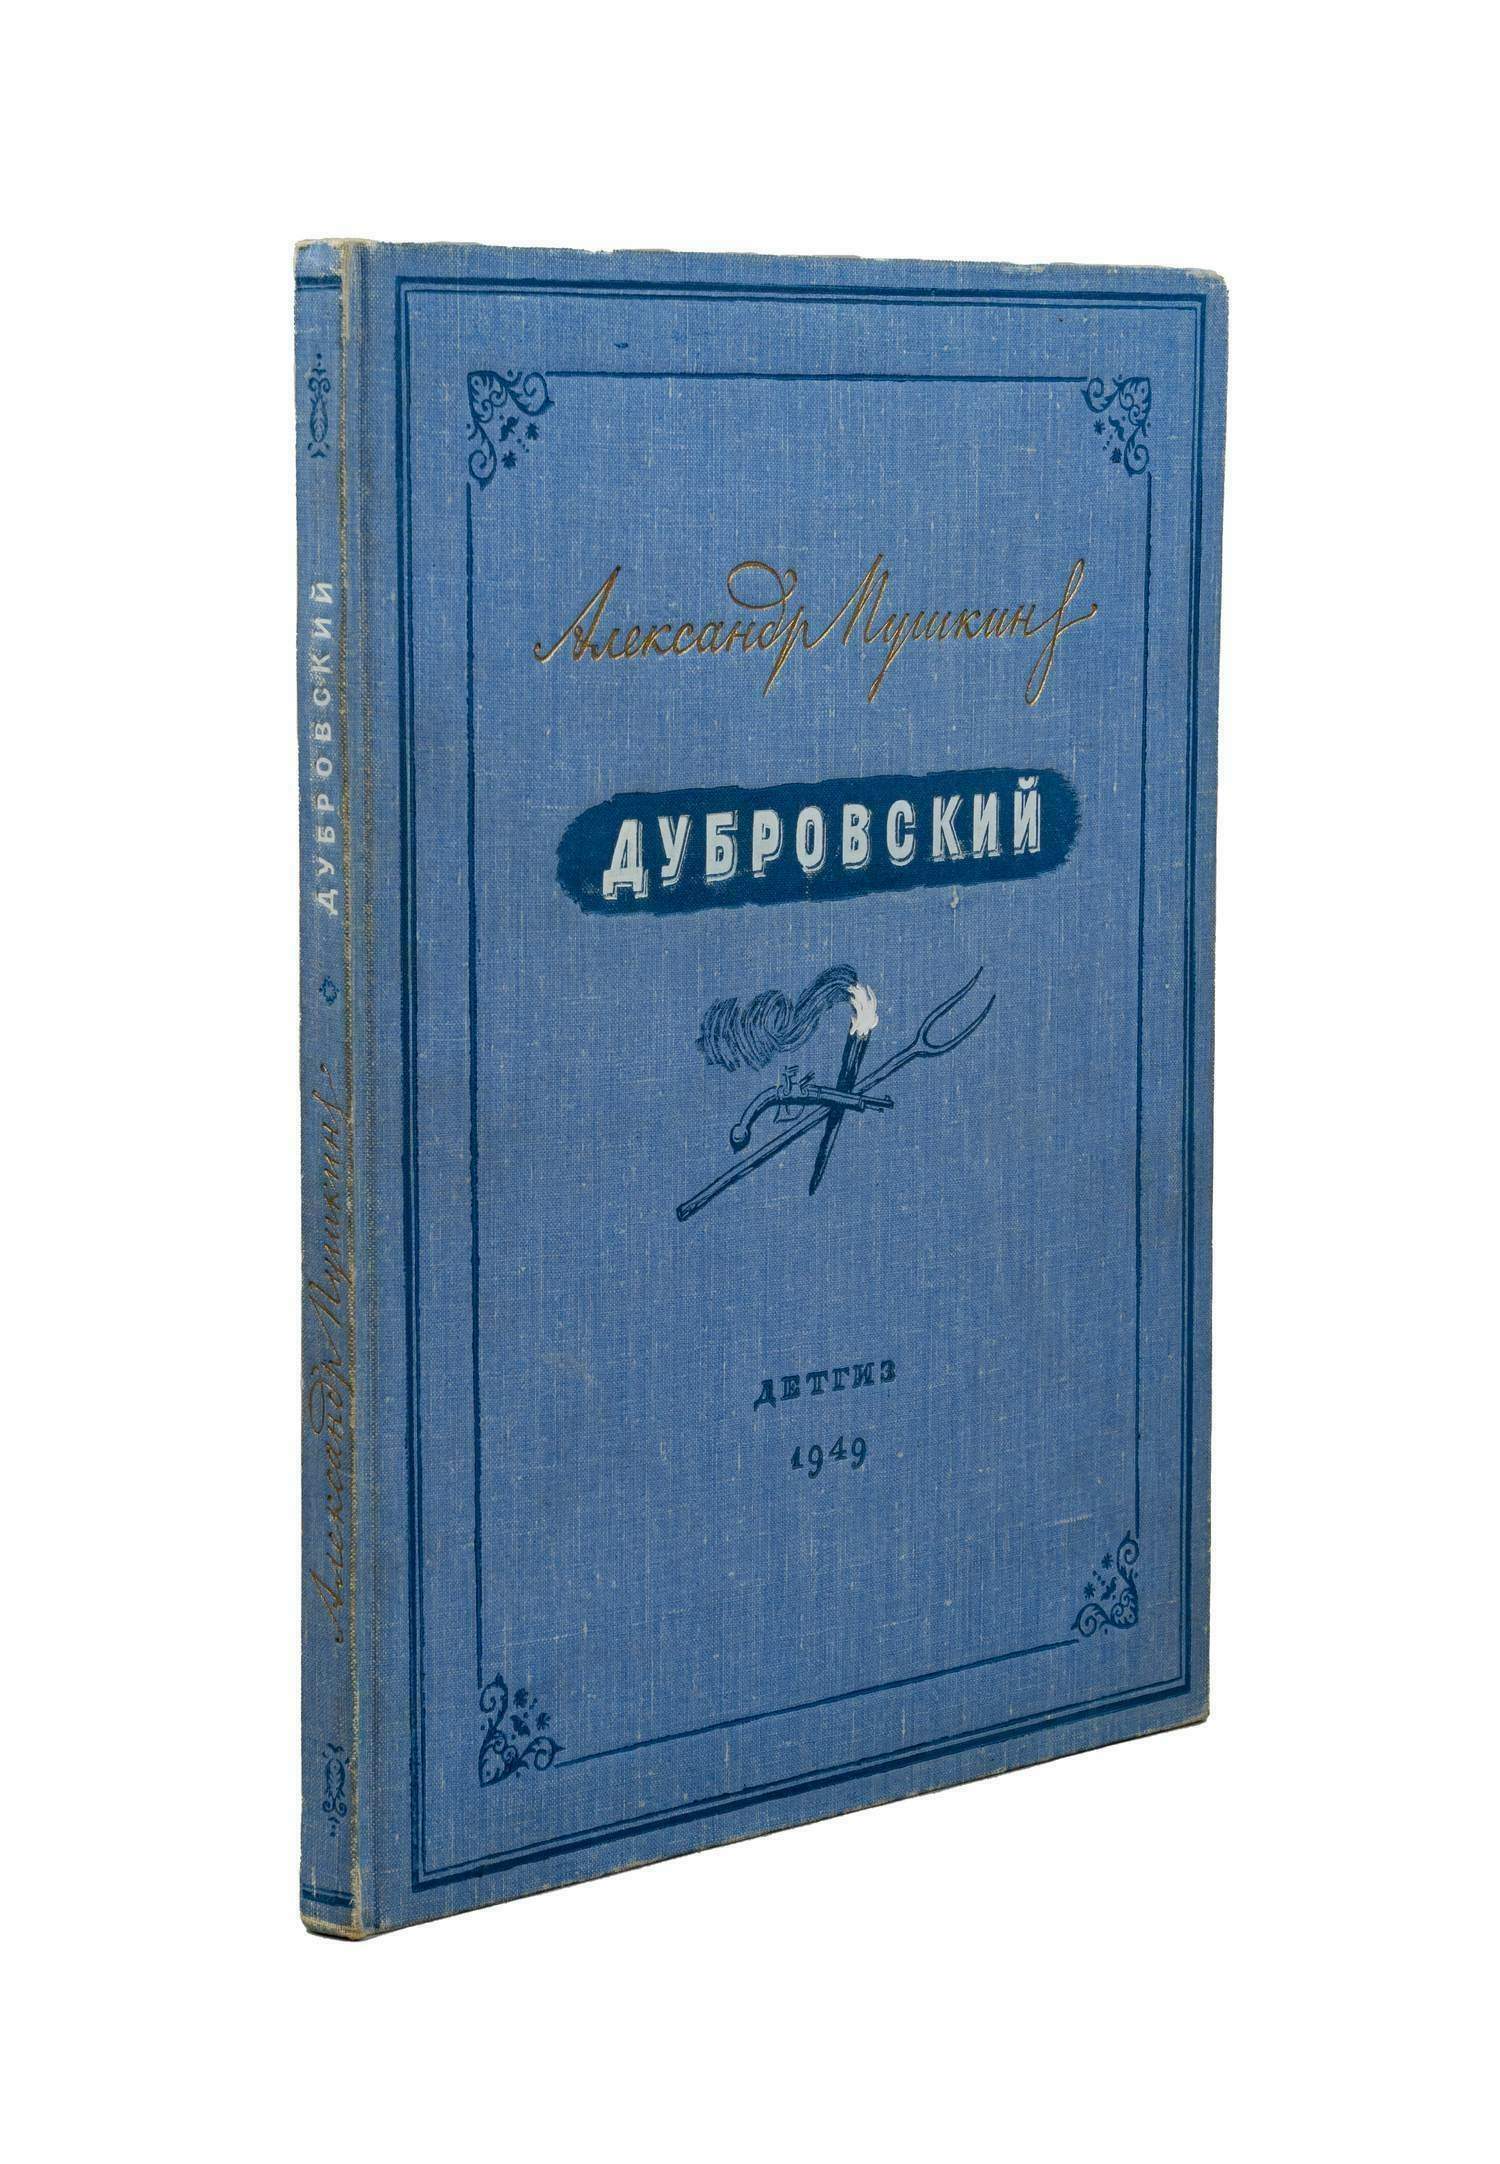 Пушкин А.С. Дубровский (М.-Л., 1949). Оформление С. Телингатера.